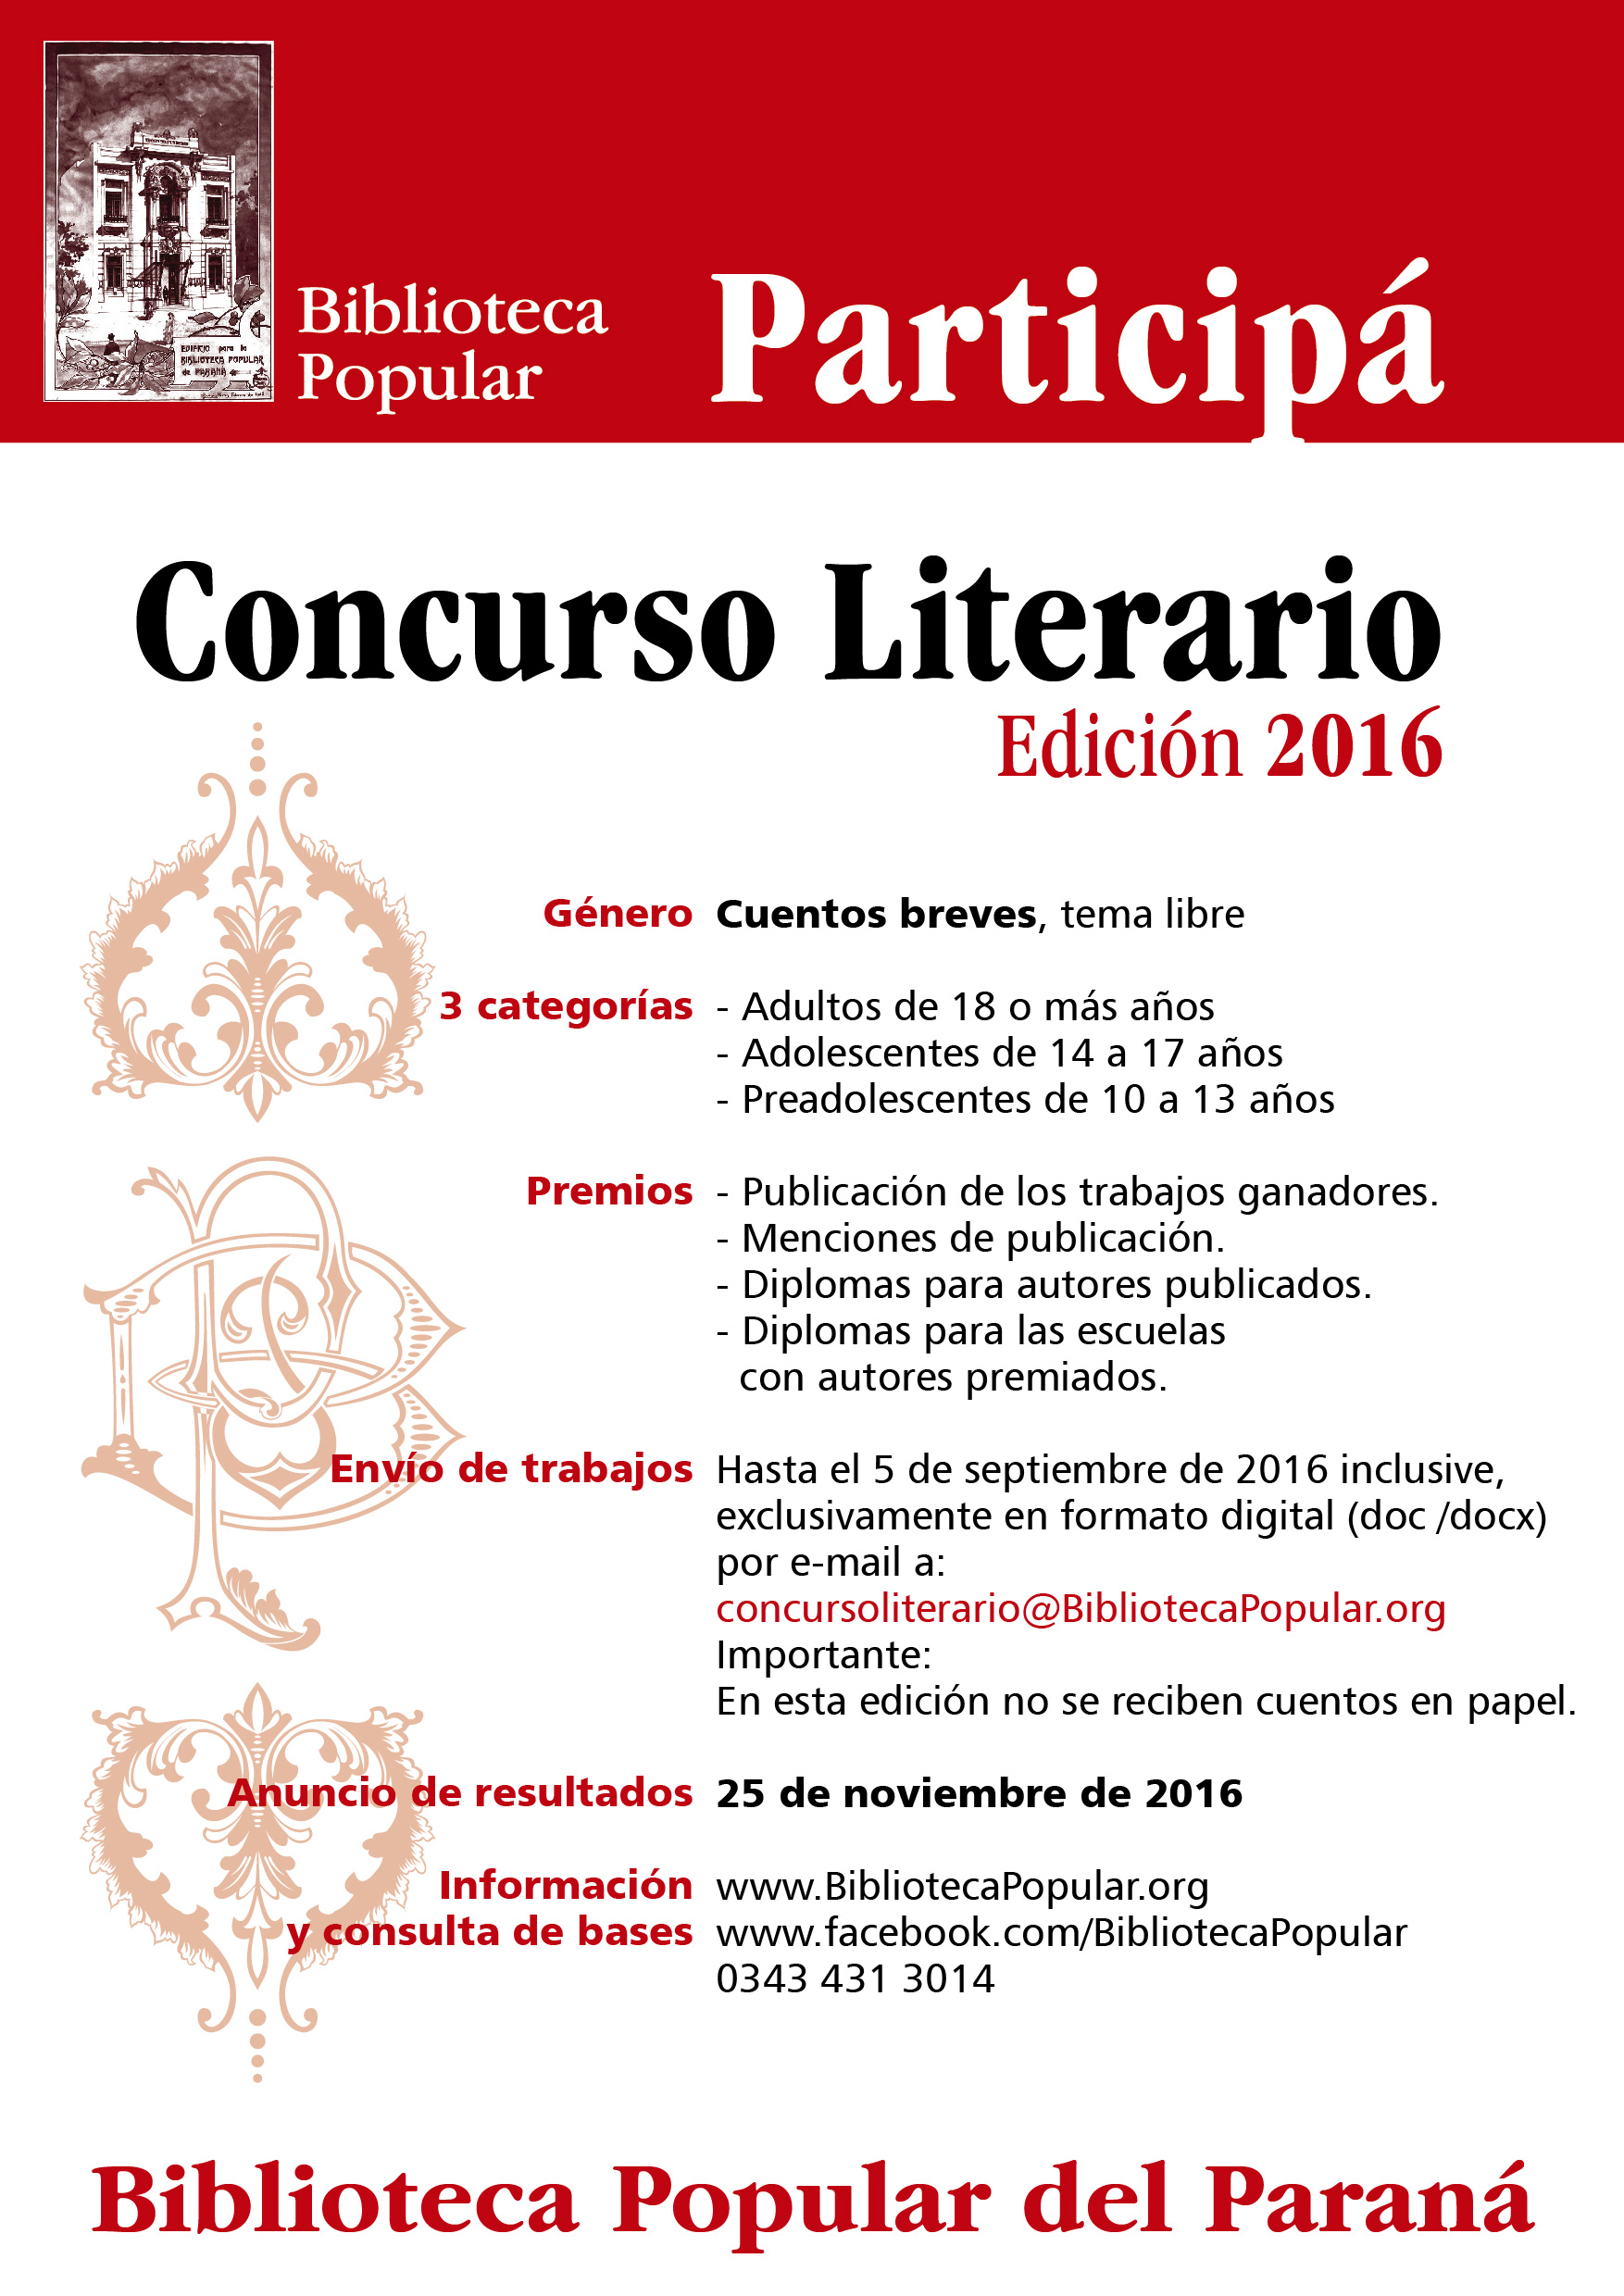 Afiche promocional del Concurso Biblioteca Popular del Paraná, Edición 2016